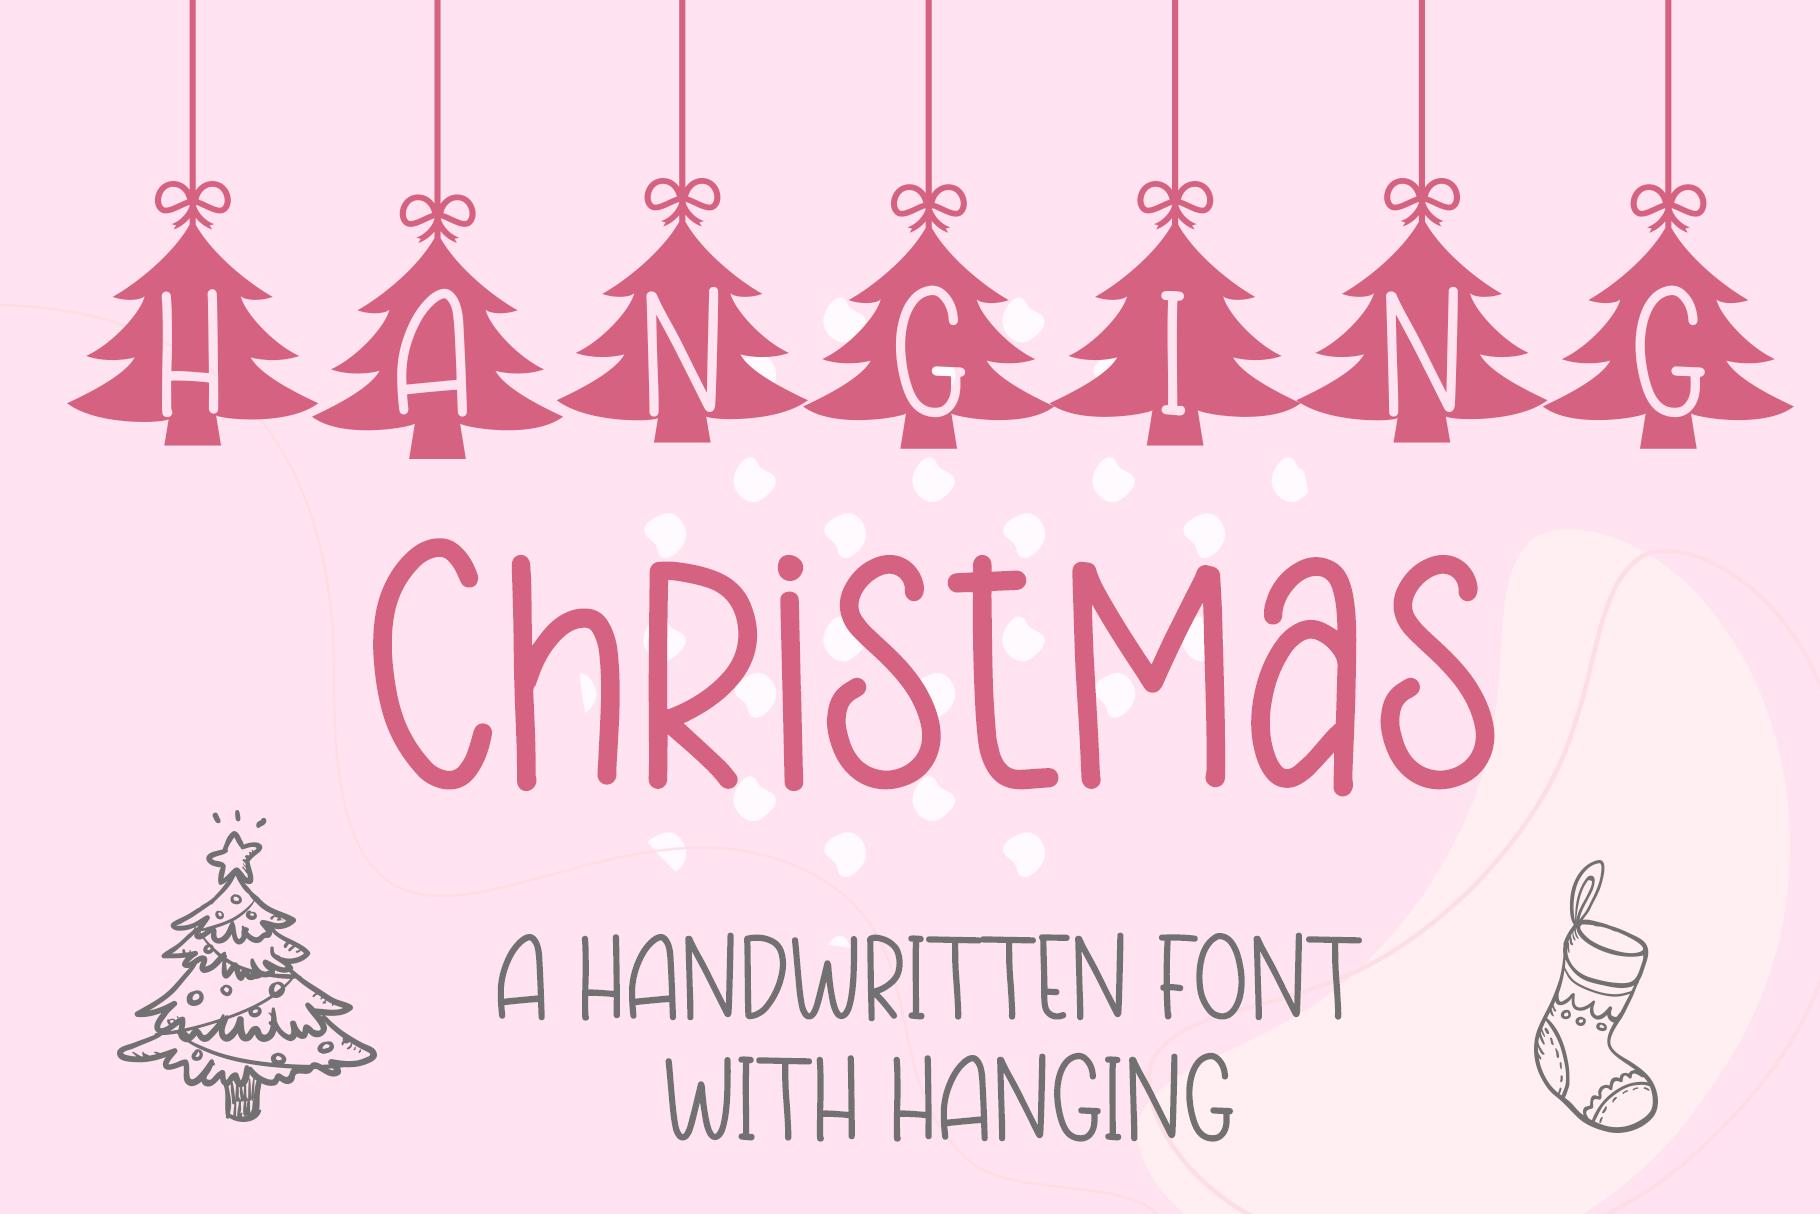 Hanging Christmas Font